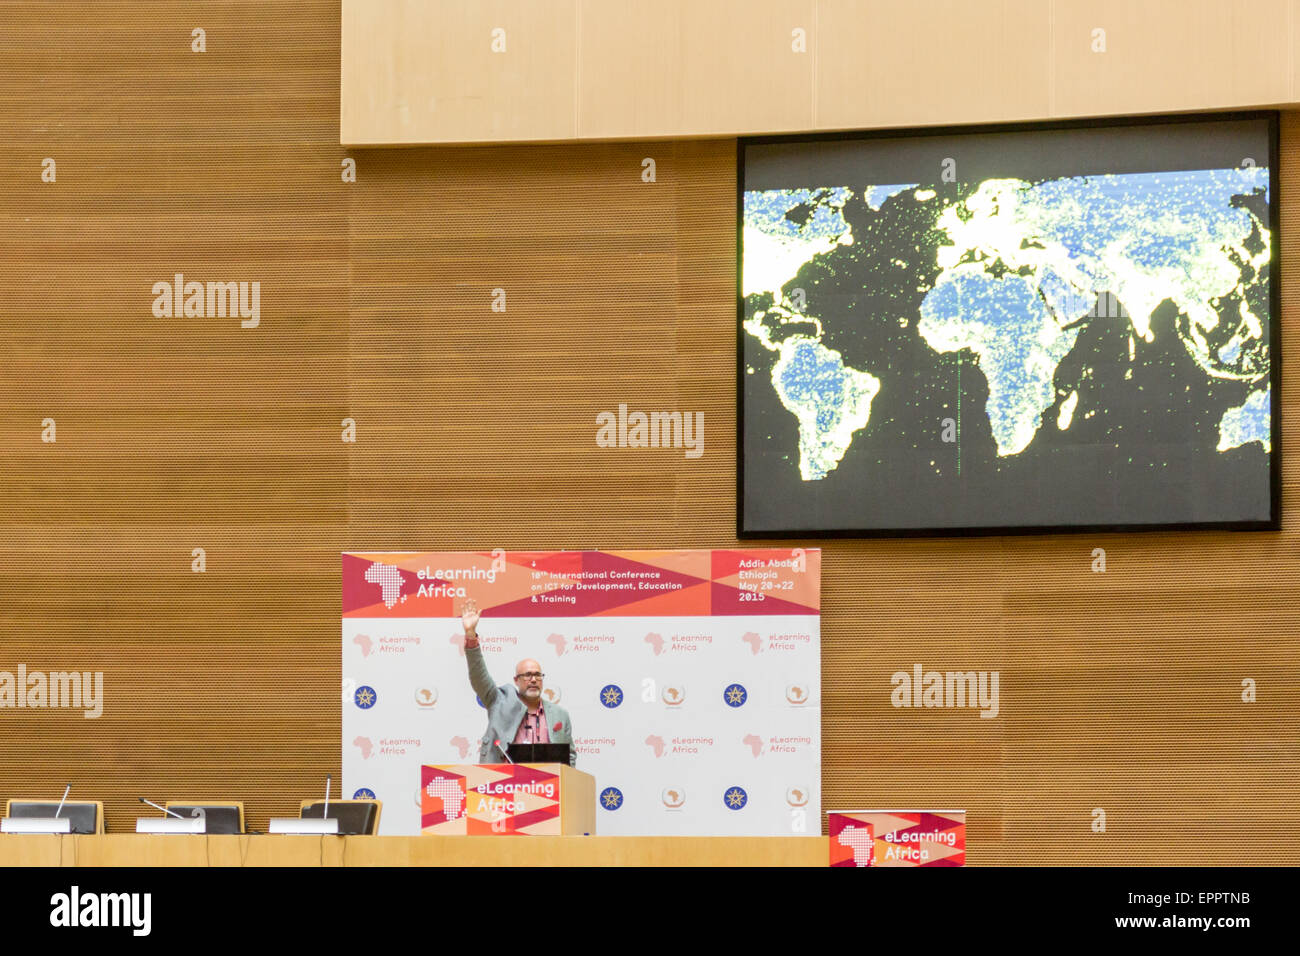 Addis Abeba, Ethiopie. 20 mai, 2015. Mark Surman, directeur exécutif, Mozilla, livre un discours lors de l'ouverture de la 10e conférence eLearning Africa, le 20 mai 2015 à Addis-Abeba, Ethiopie. Crédit : Dereje Belachew/Alamy Live News Banque D'Images